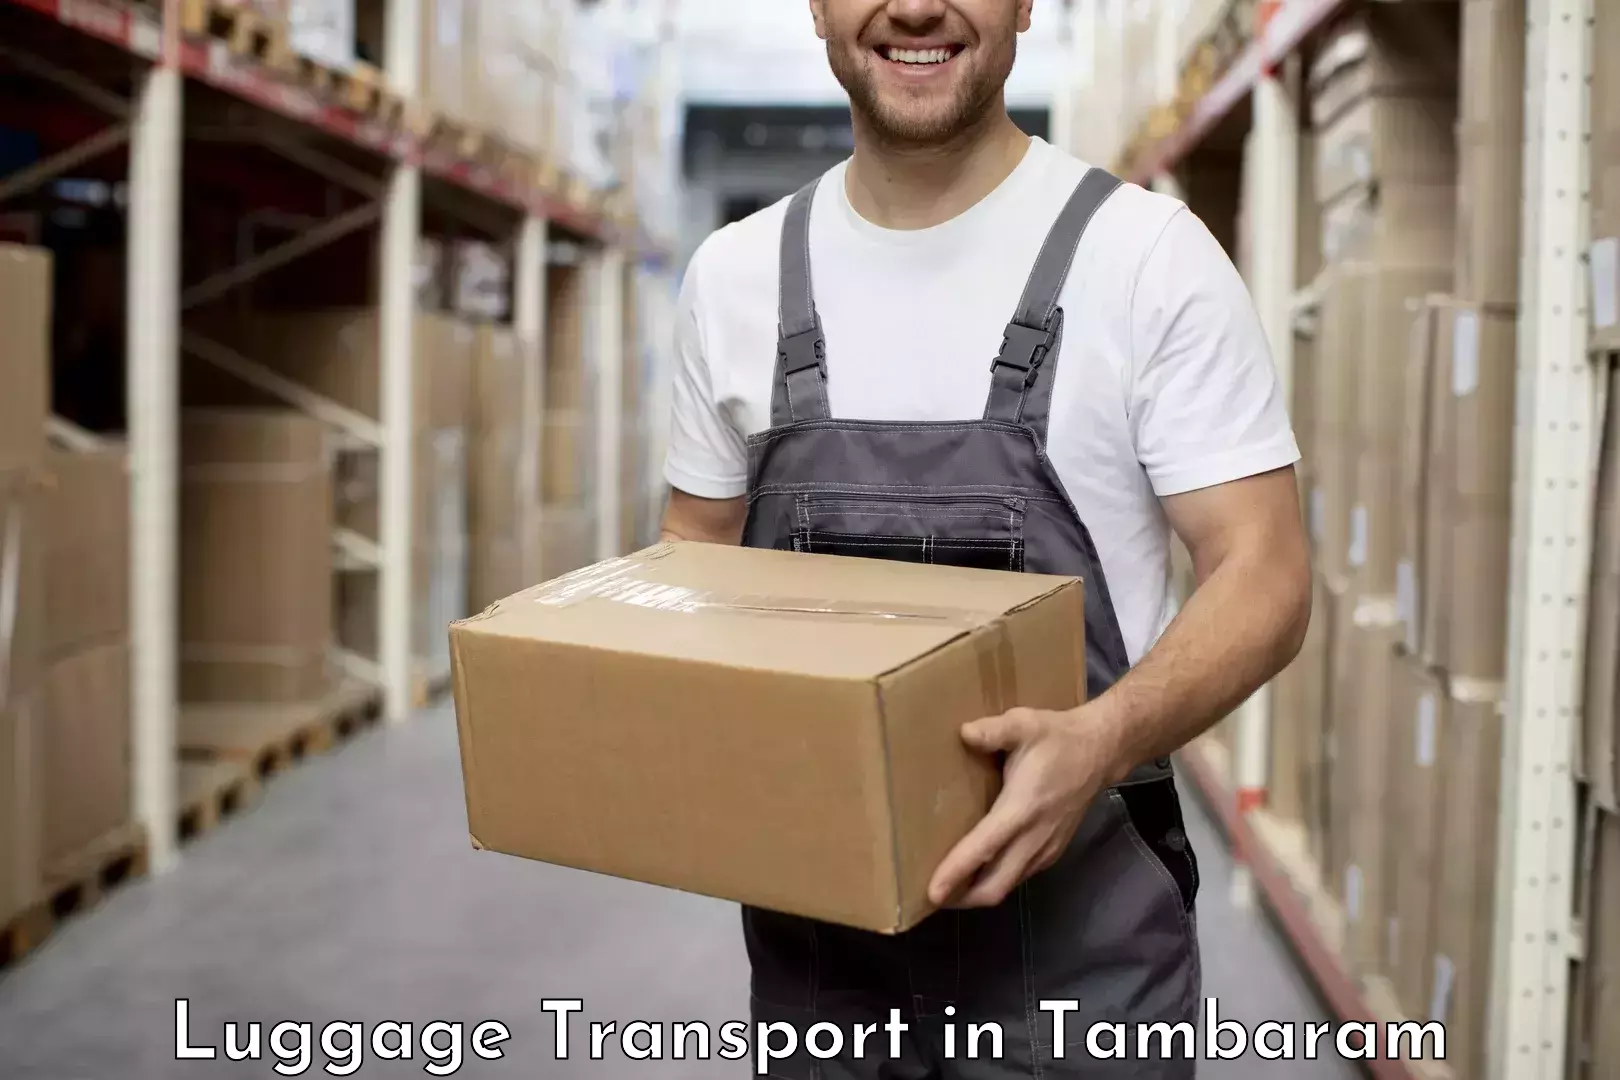 Luggage transfer service in Tambaram